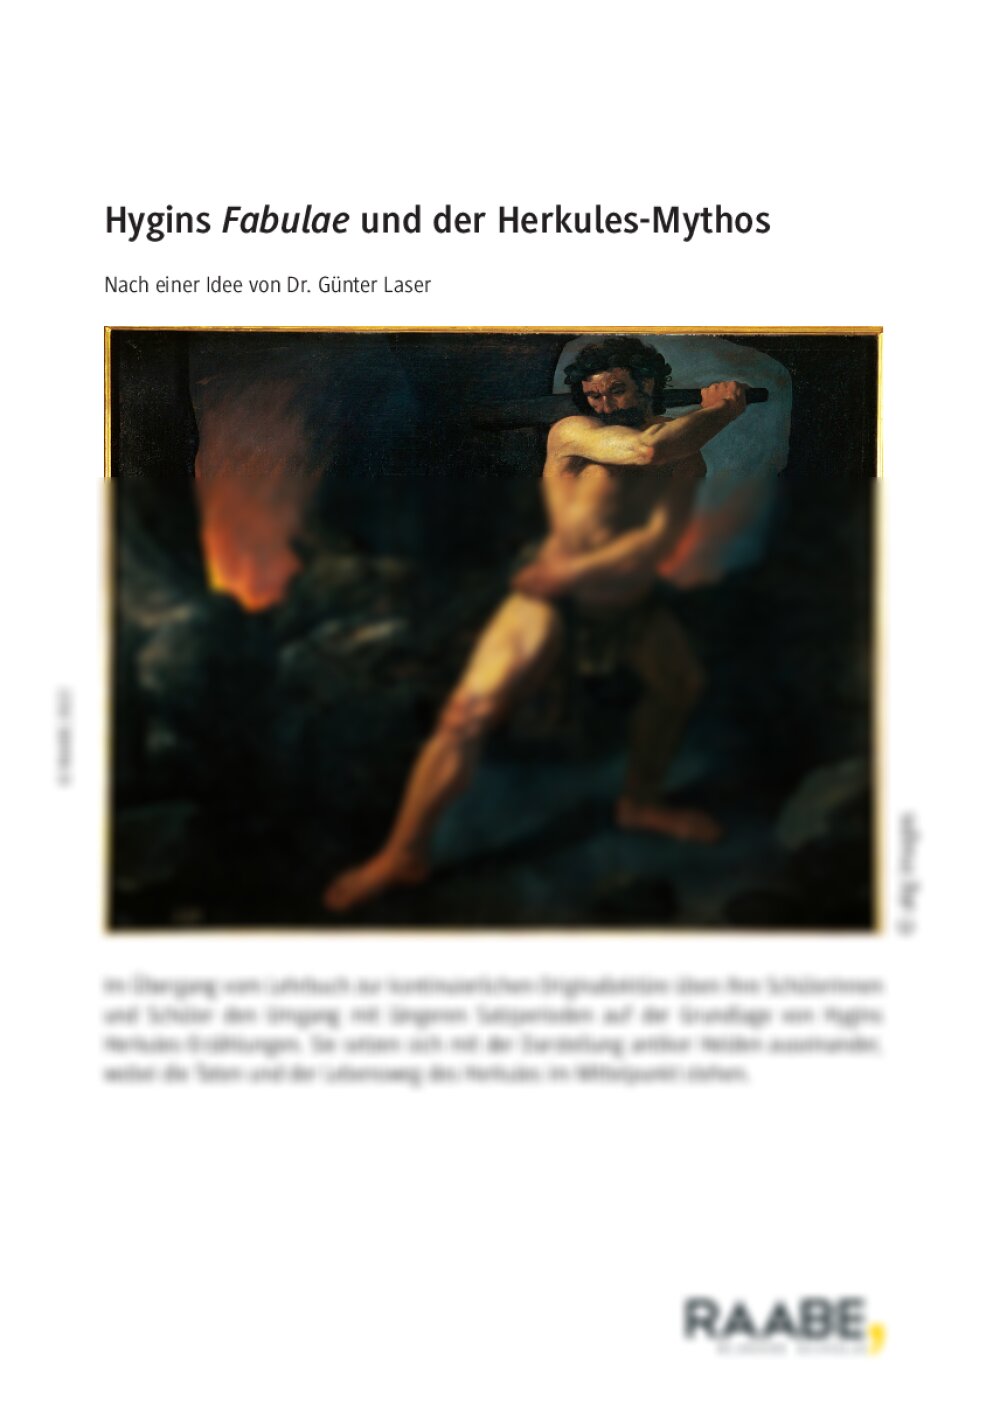 Hygins Fabulae und der Herkules-Mythos - Seite 1